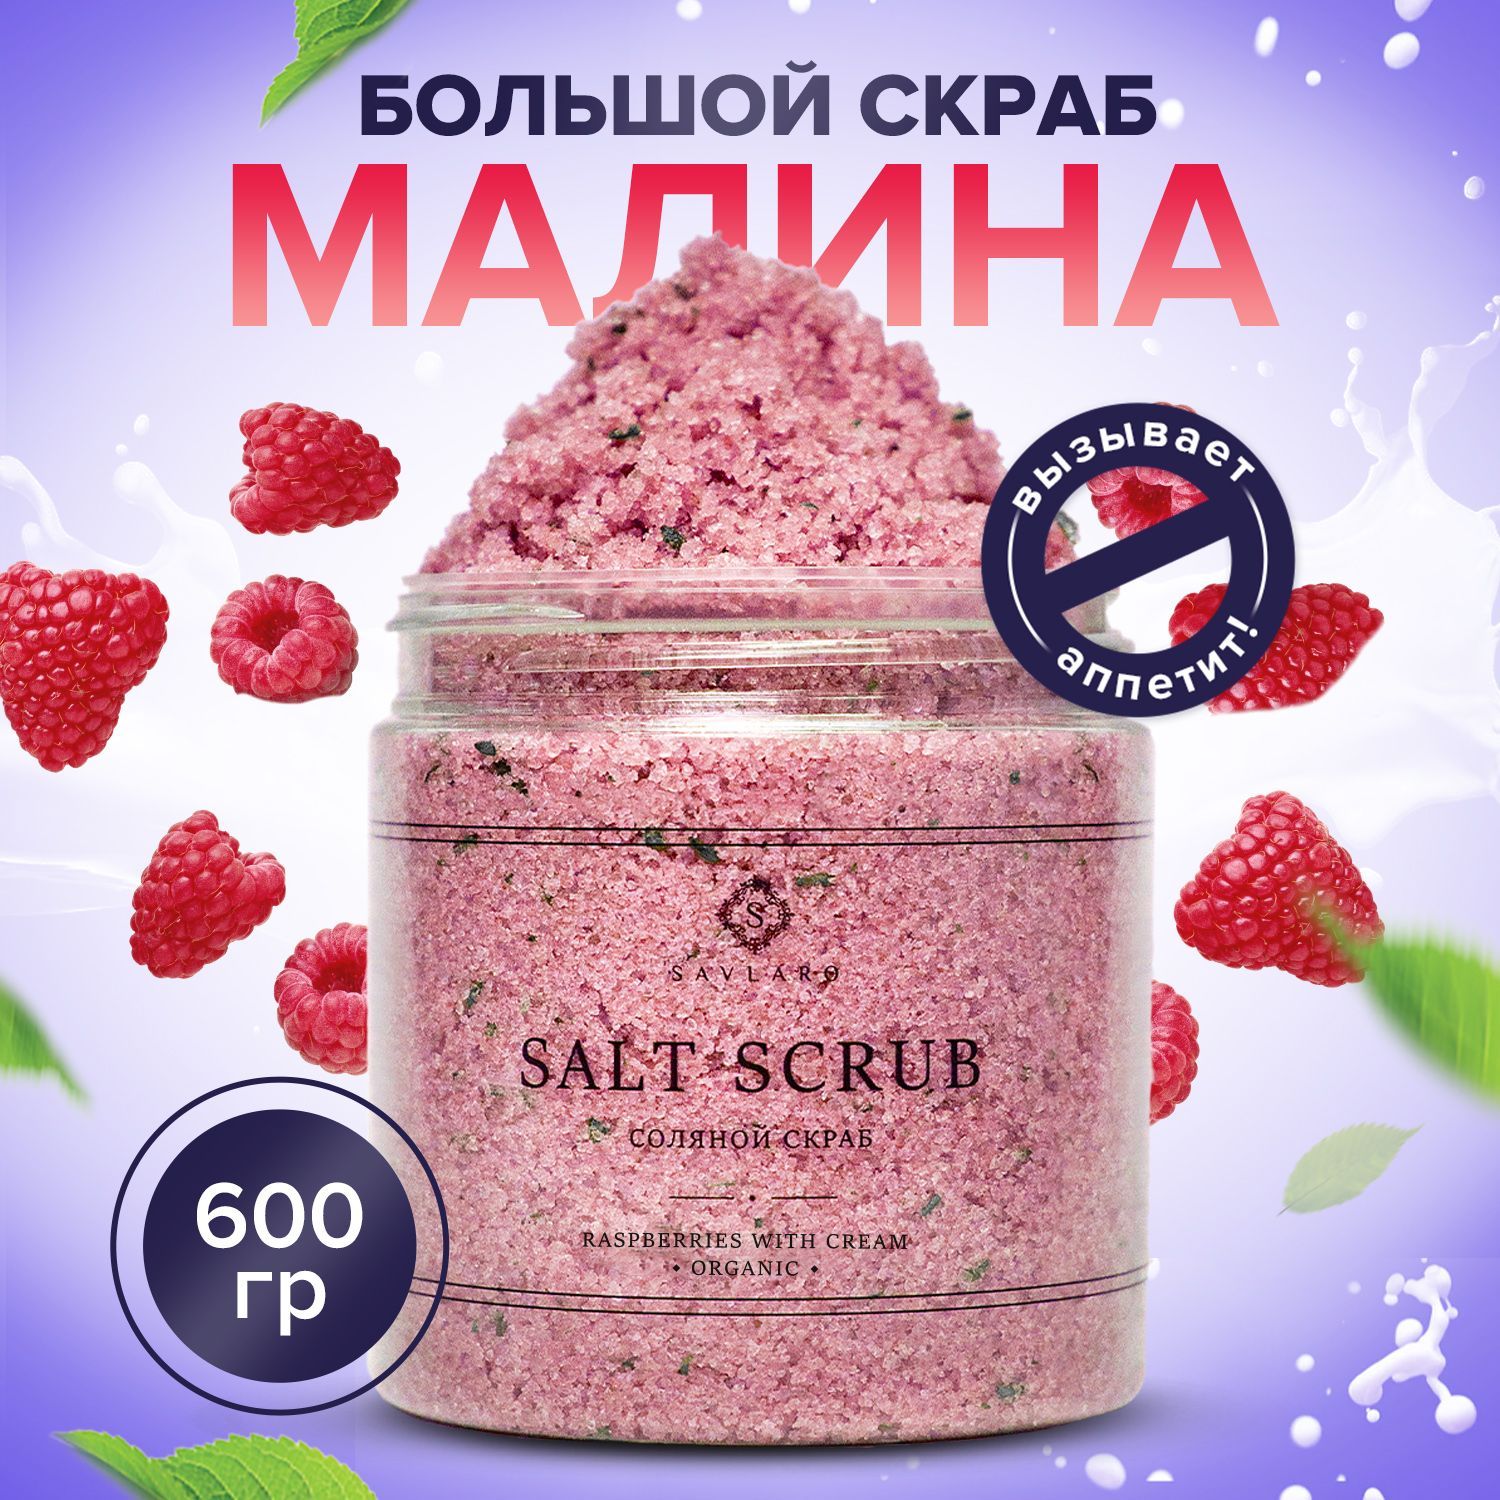 Соляной скраб для тела Savlaro Малина со сливками 600 г скраб гоммаж rozetta для тела фруктовый нектар 300 г